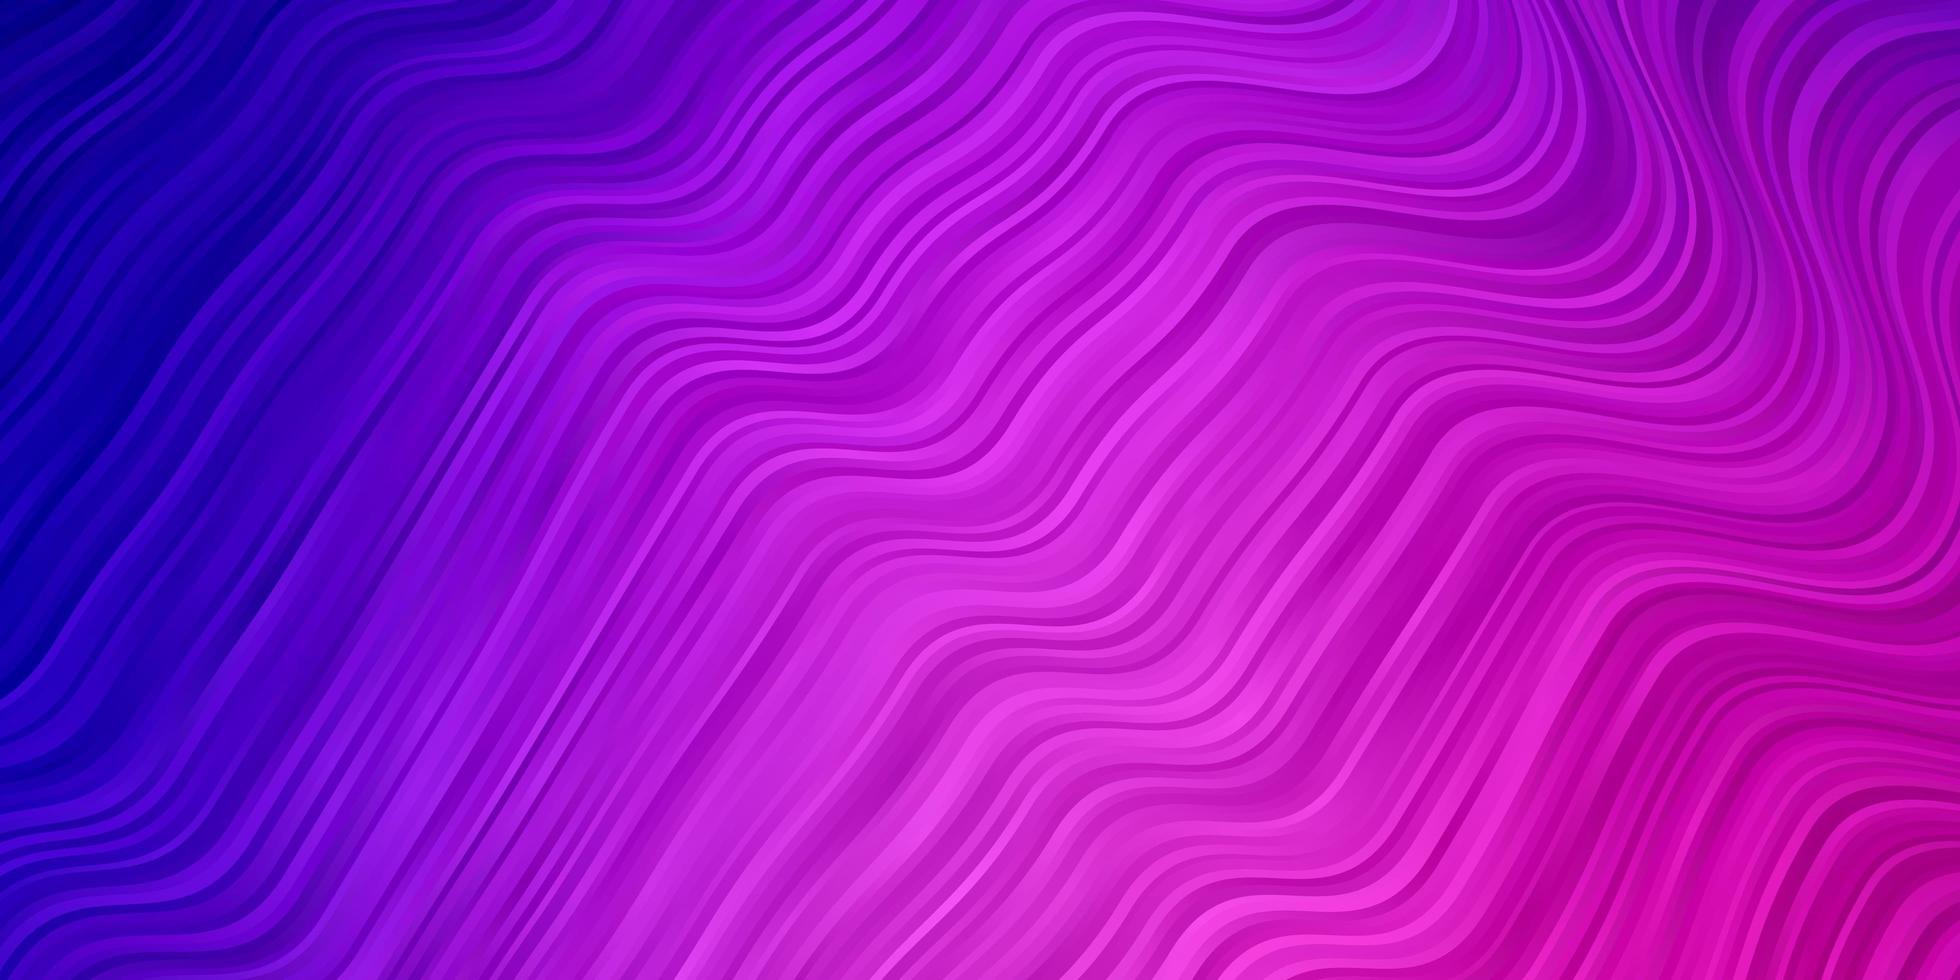 hellvioletter rosa Vektorhintergrund mit farbiger Linienillustration im kreisförmigen Stil mit Linienmuster für Geschäftsbroschüren vektor